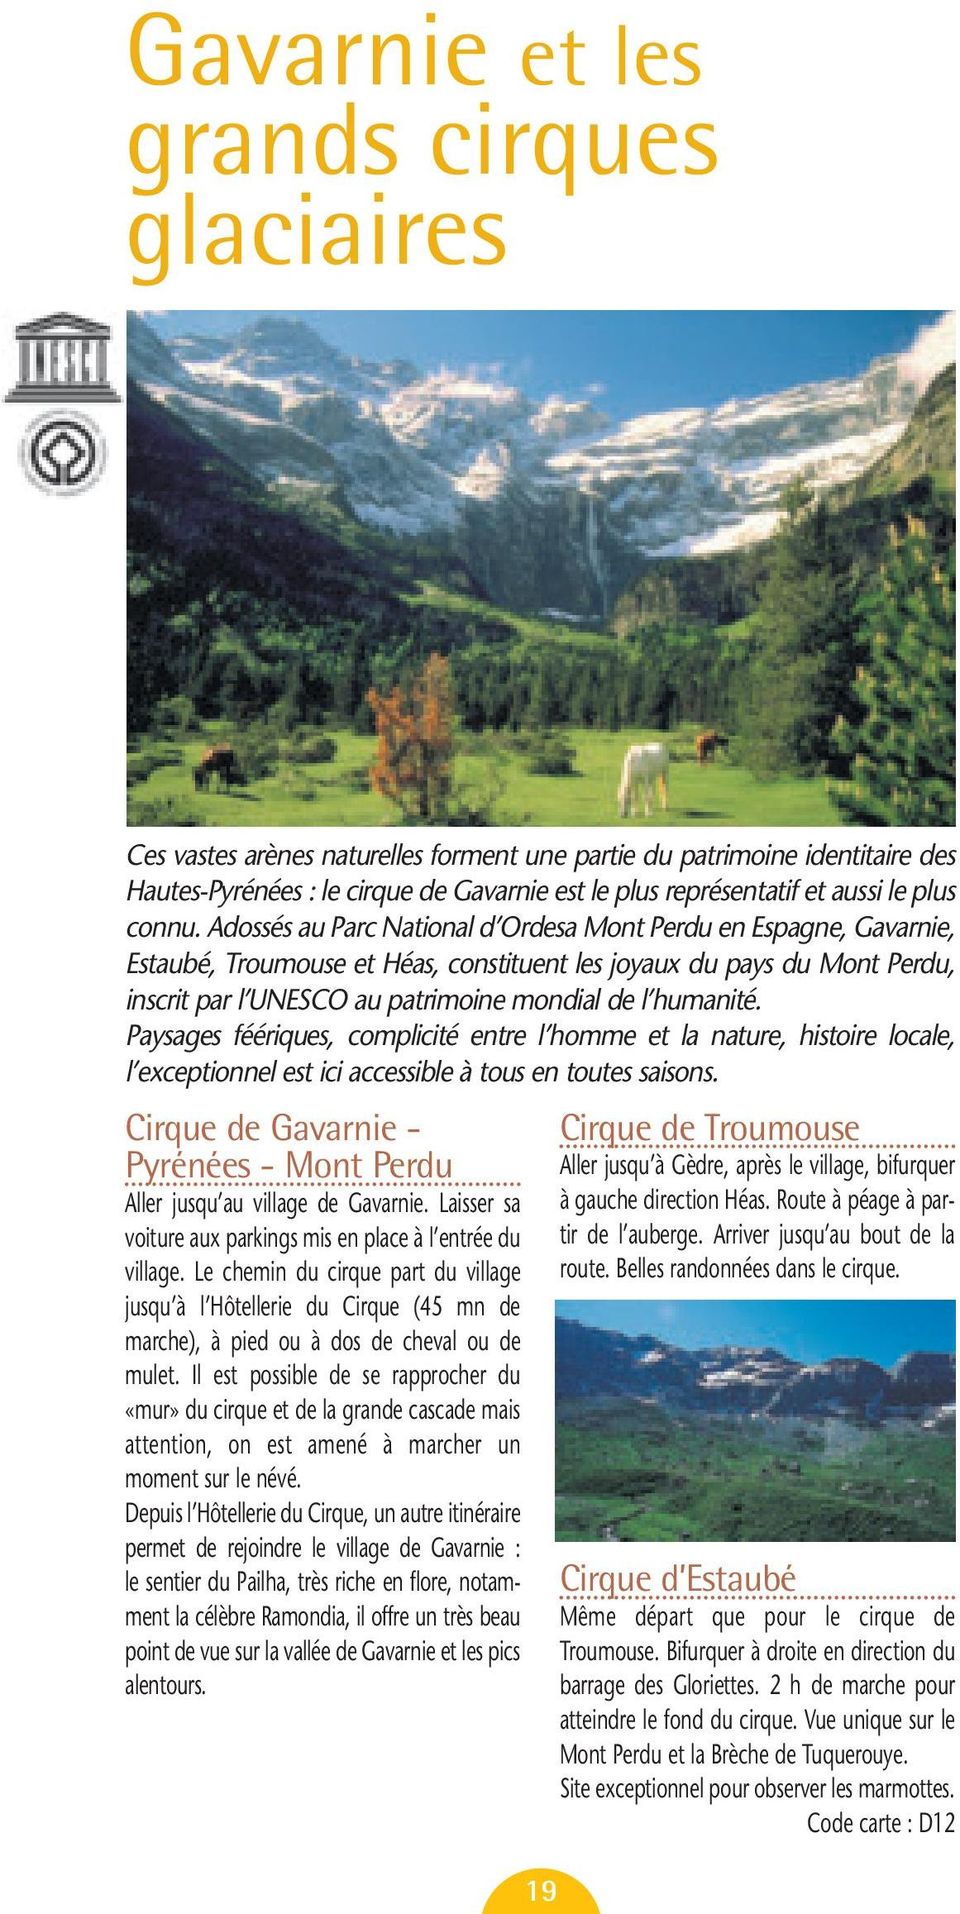 Adossés au Parc National d Ordesa Mont Perdu en Espagne, Gavarnie, Estaubé, Troumouse et Héas, constituent les joyaux du pays du Mont Perdu, inscrit par l UNESCO au patrimoine mondial de l humanité.